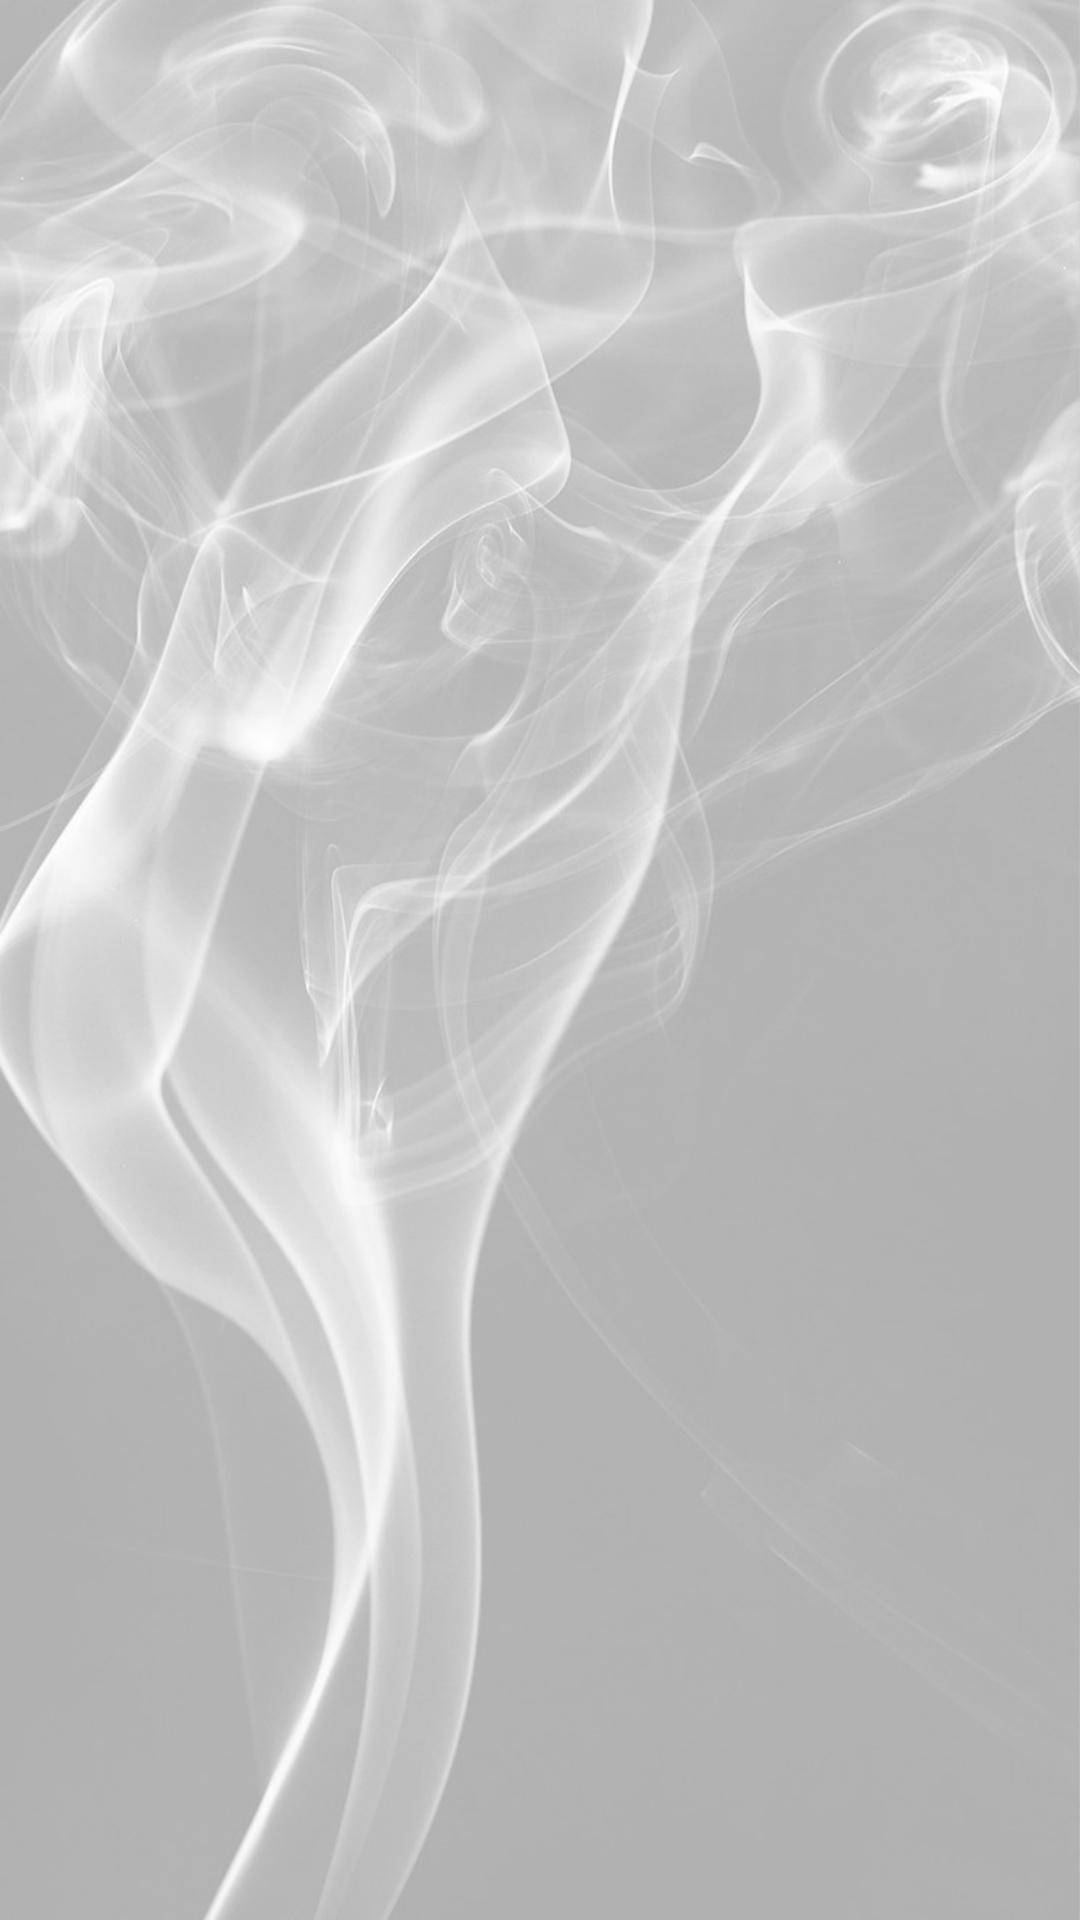 Smoke White Aesthetic Iphone Background